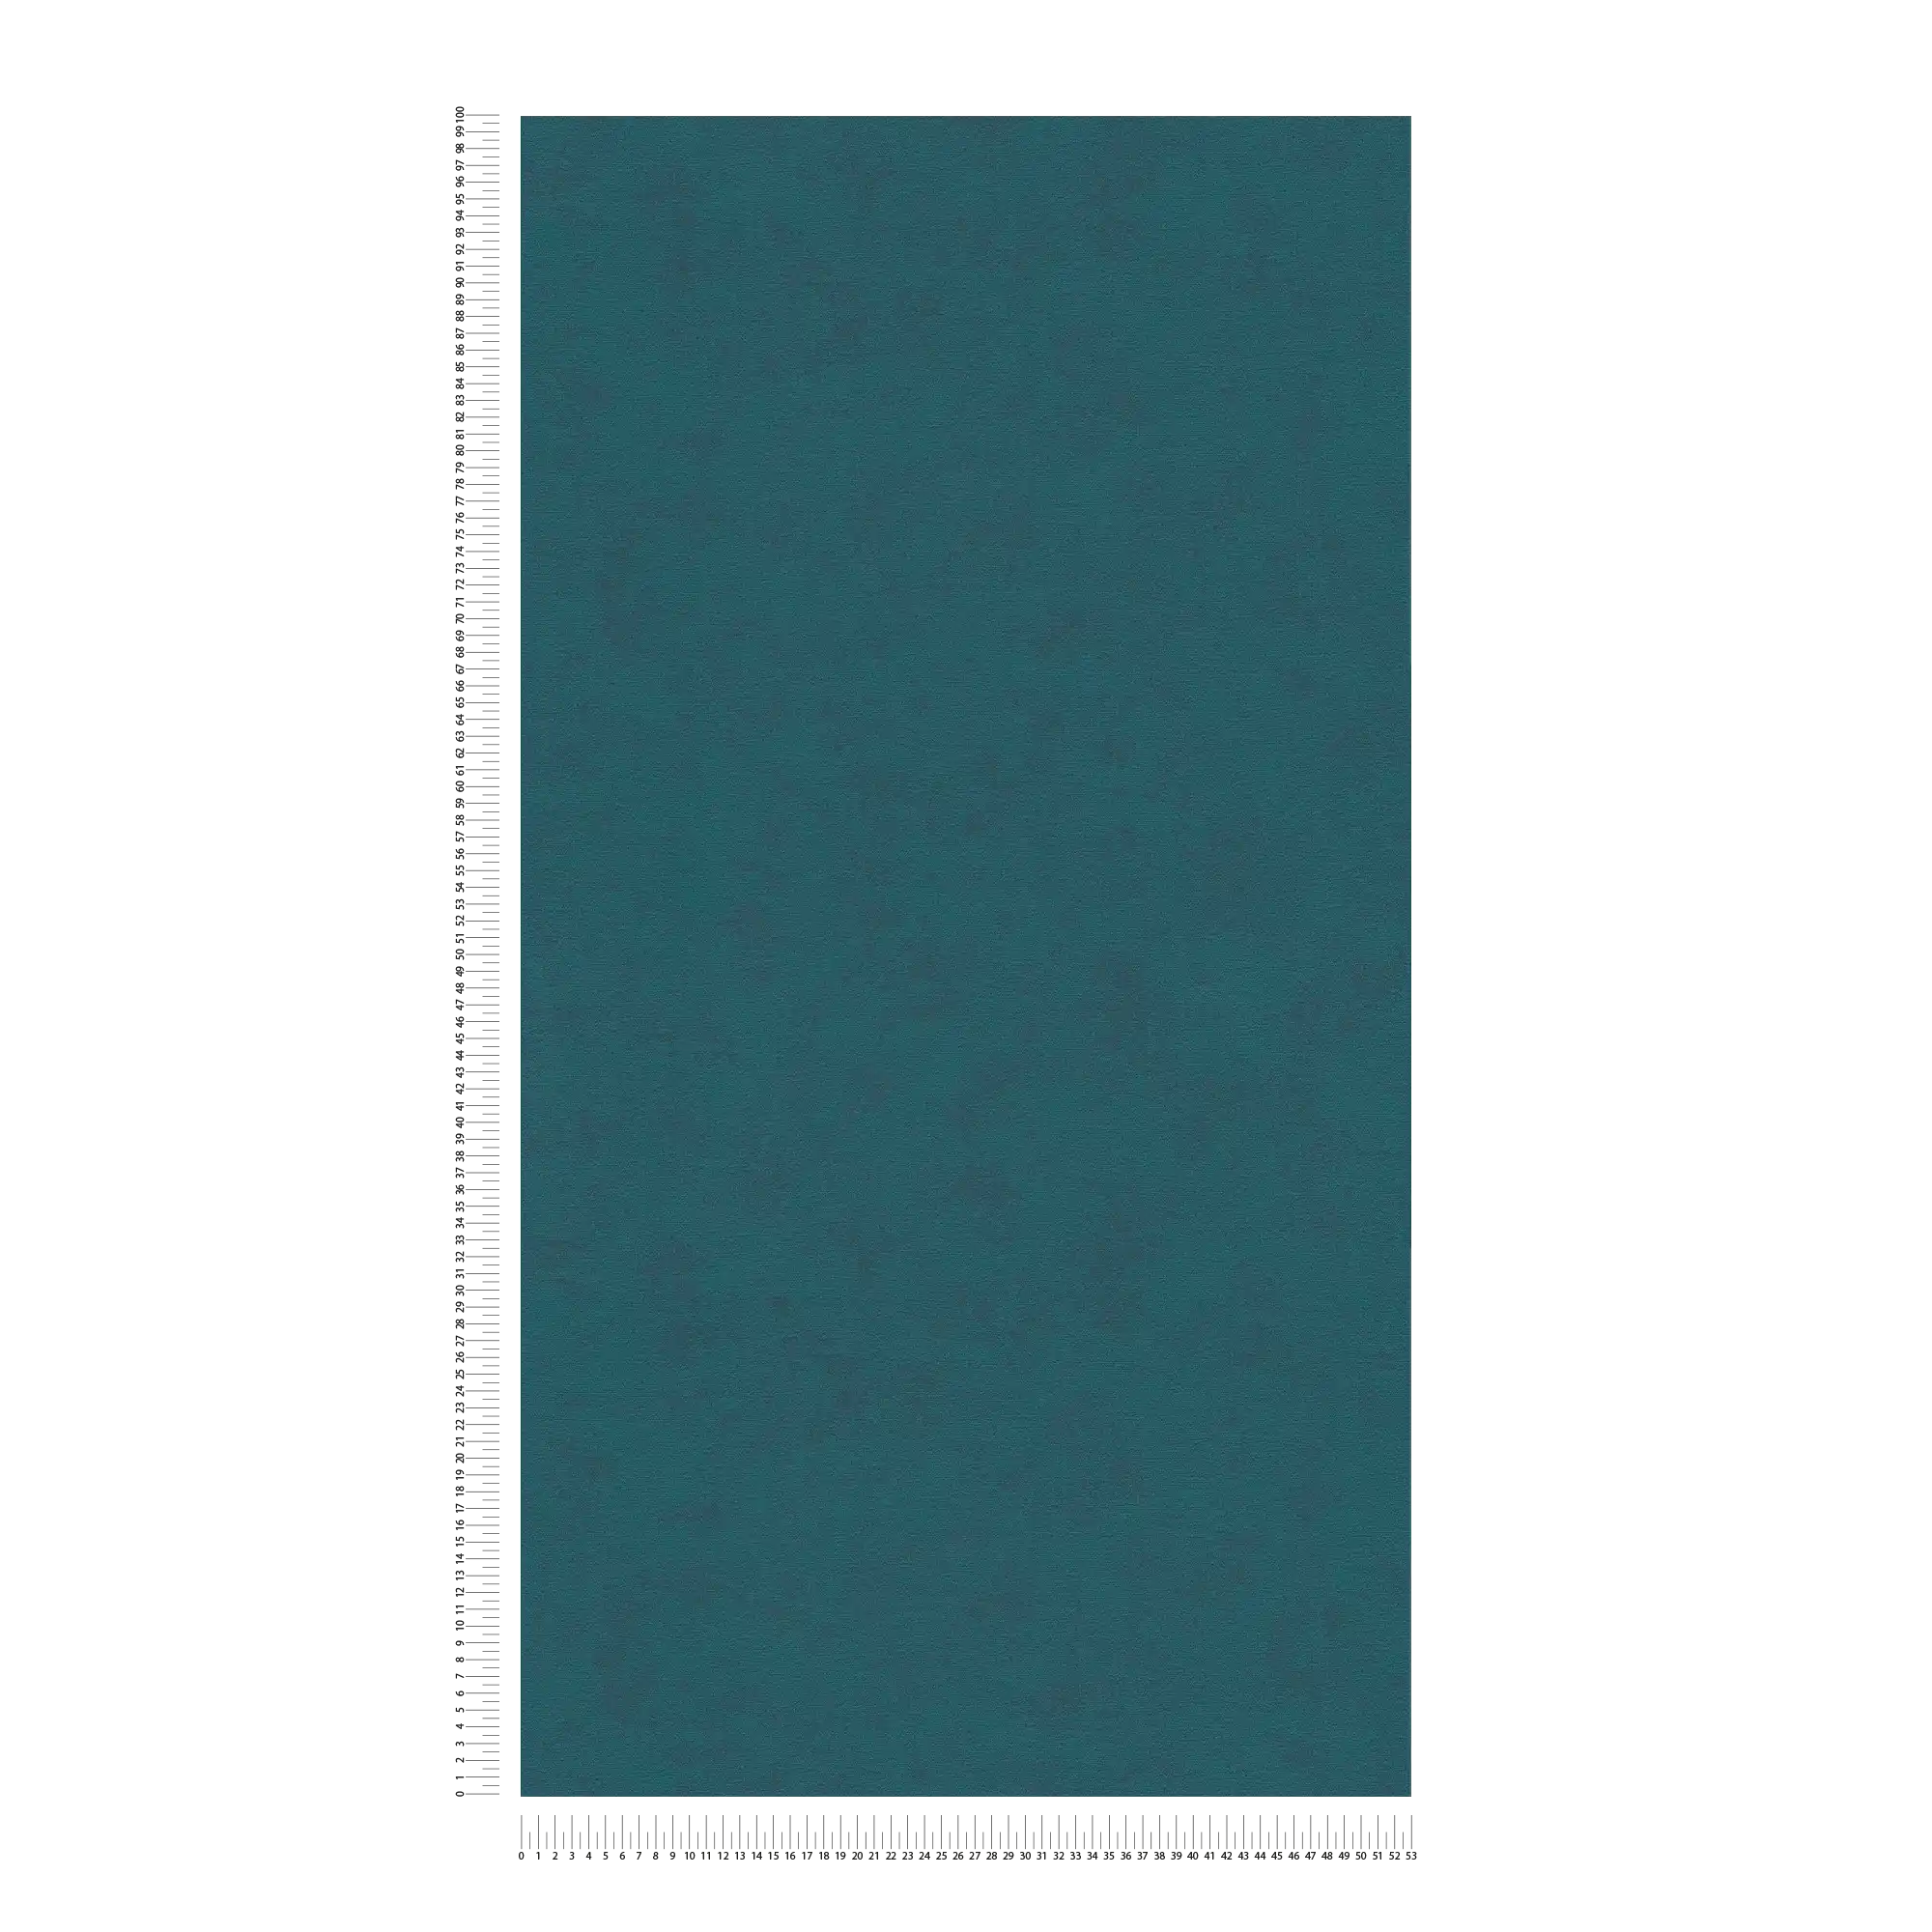             Unifarbene Vliestapete mit feiner Oberflächenstruktur – Blau, Grün
        